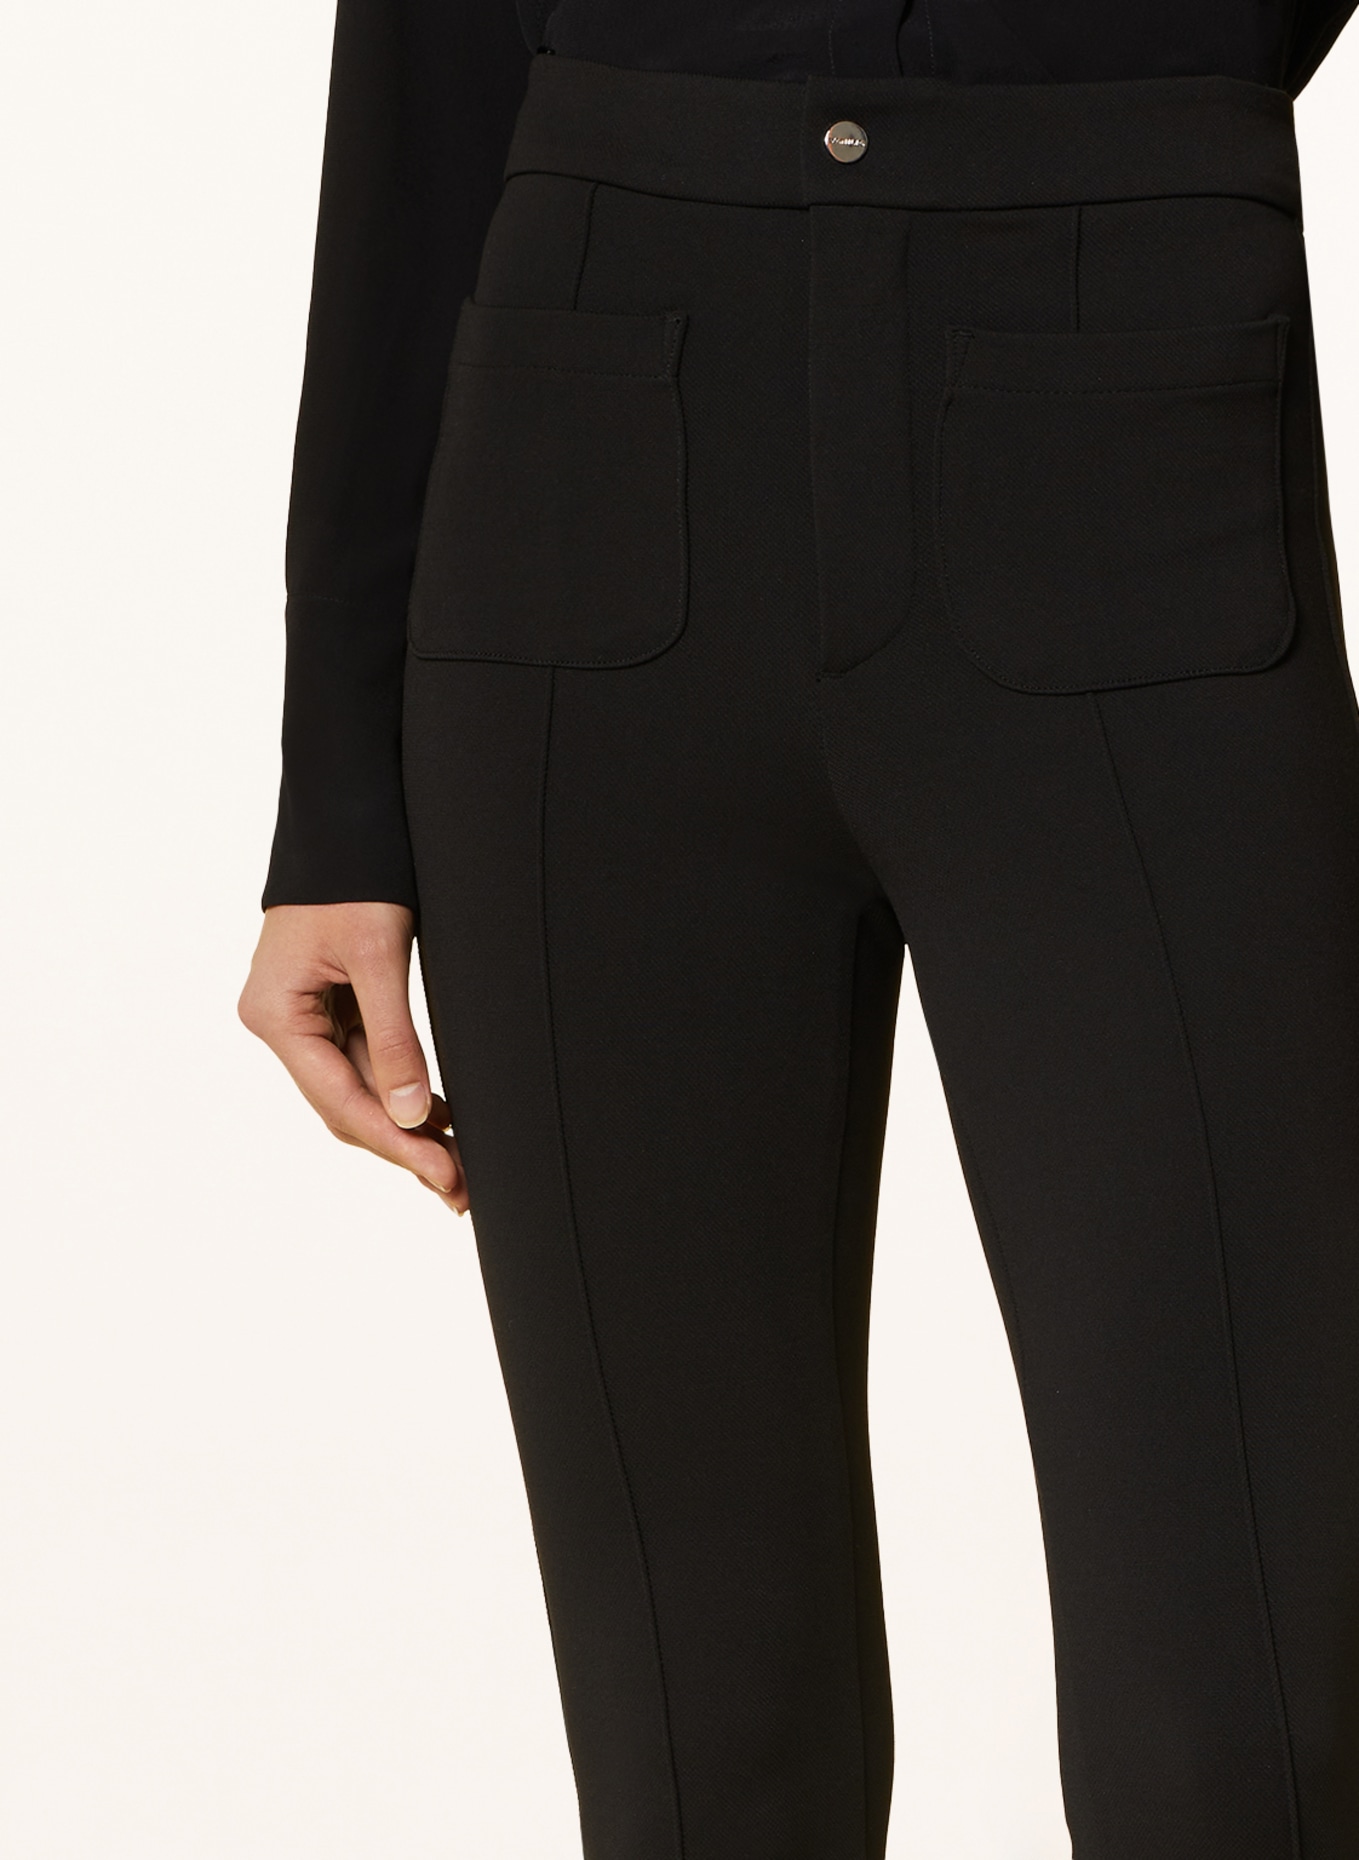 VANILIA Jersey pants, Color: BLACK (Image 5)